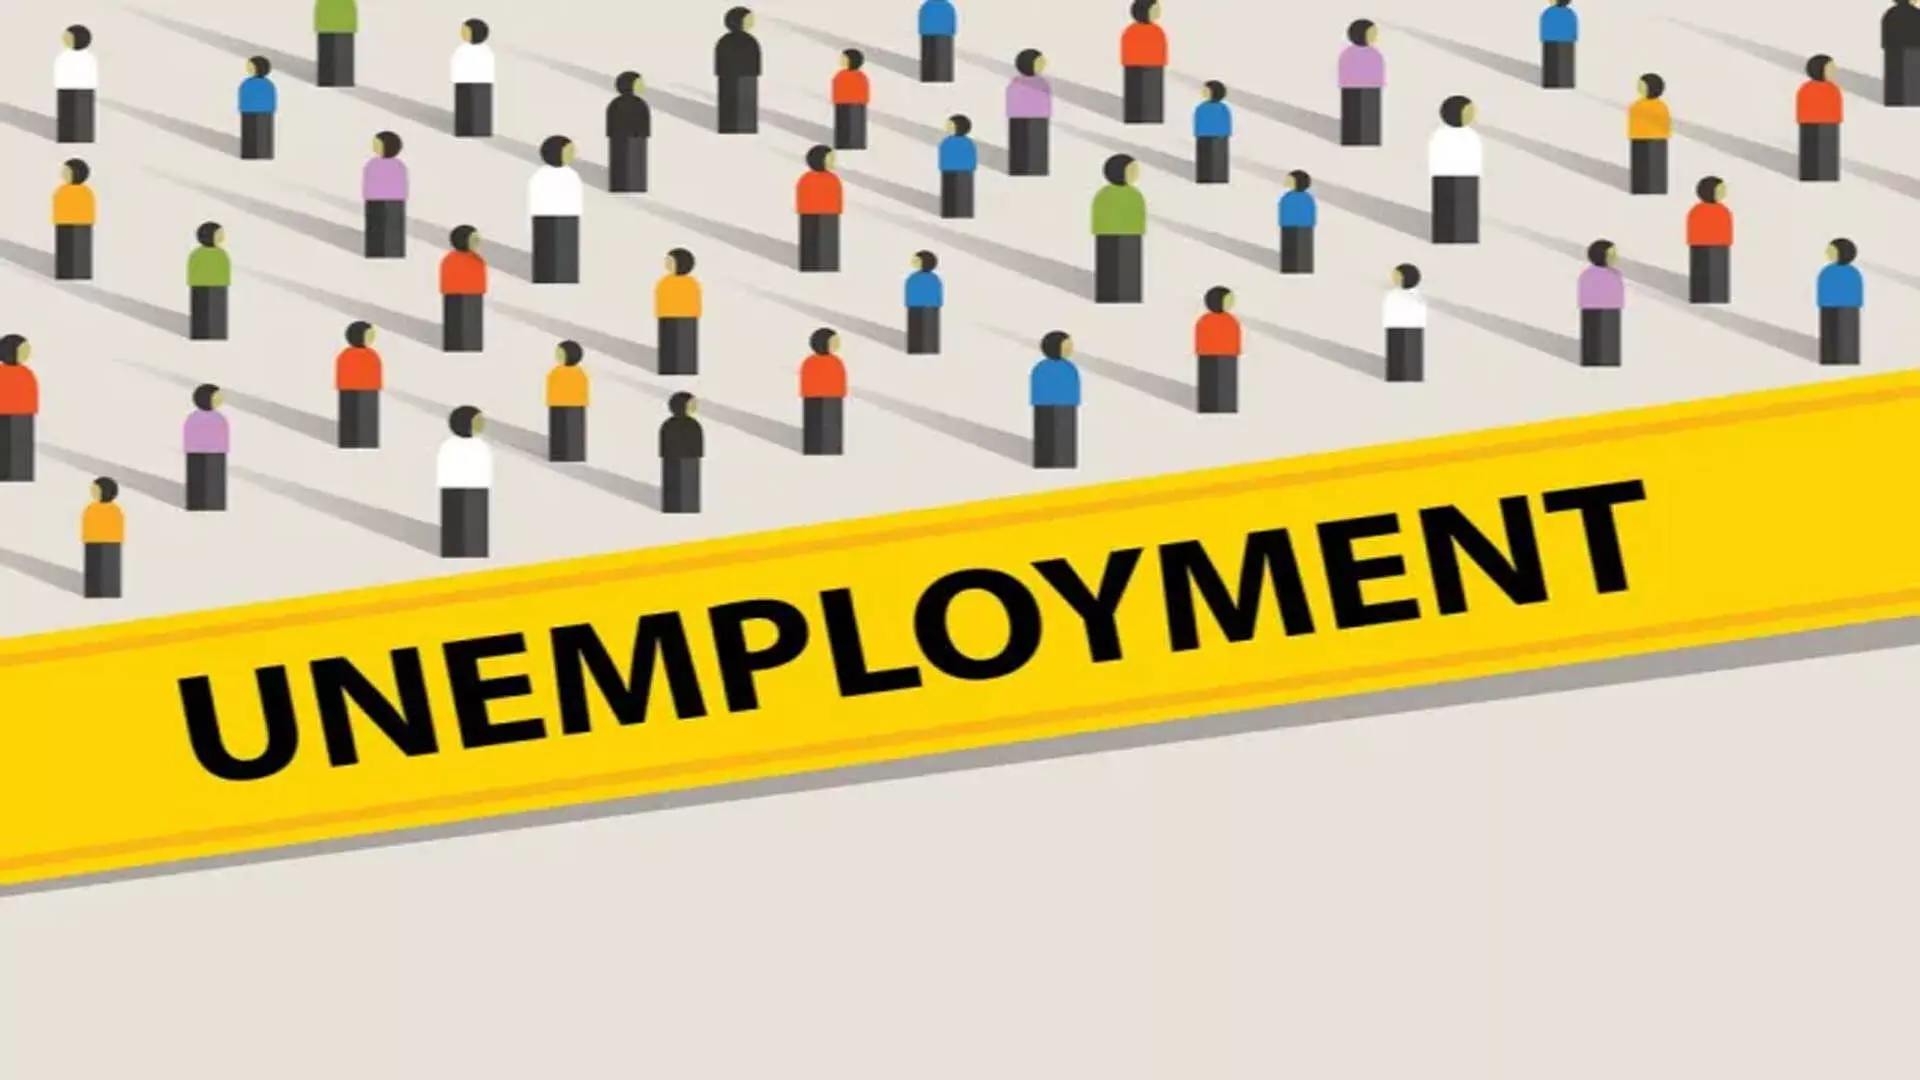 DEHLI: भारत में युवा बेरोजगारी दर पांच साल में 17.8% से घटकर 10% हुई: आर्थिक सर्वेक्षण